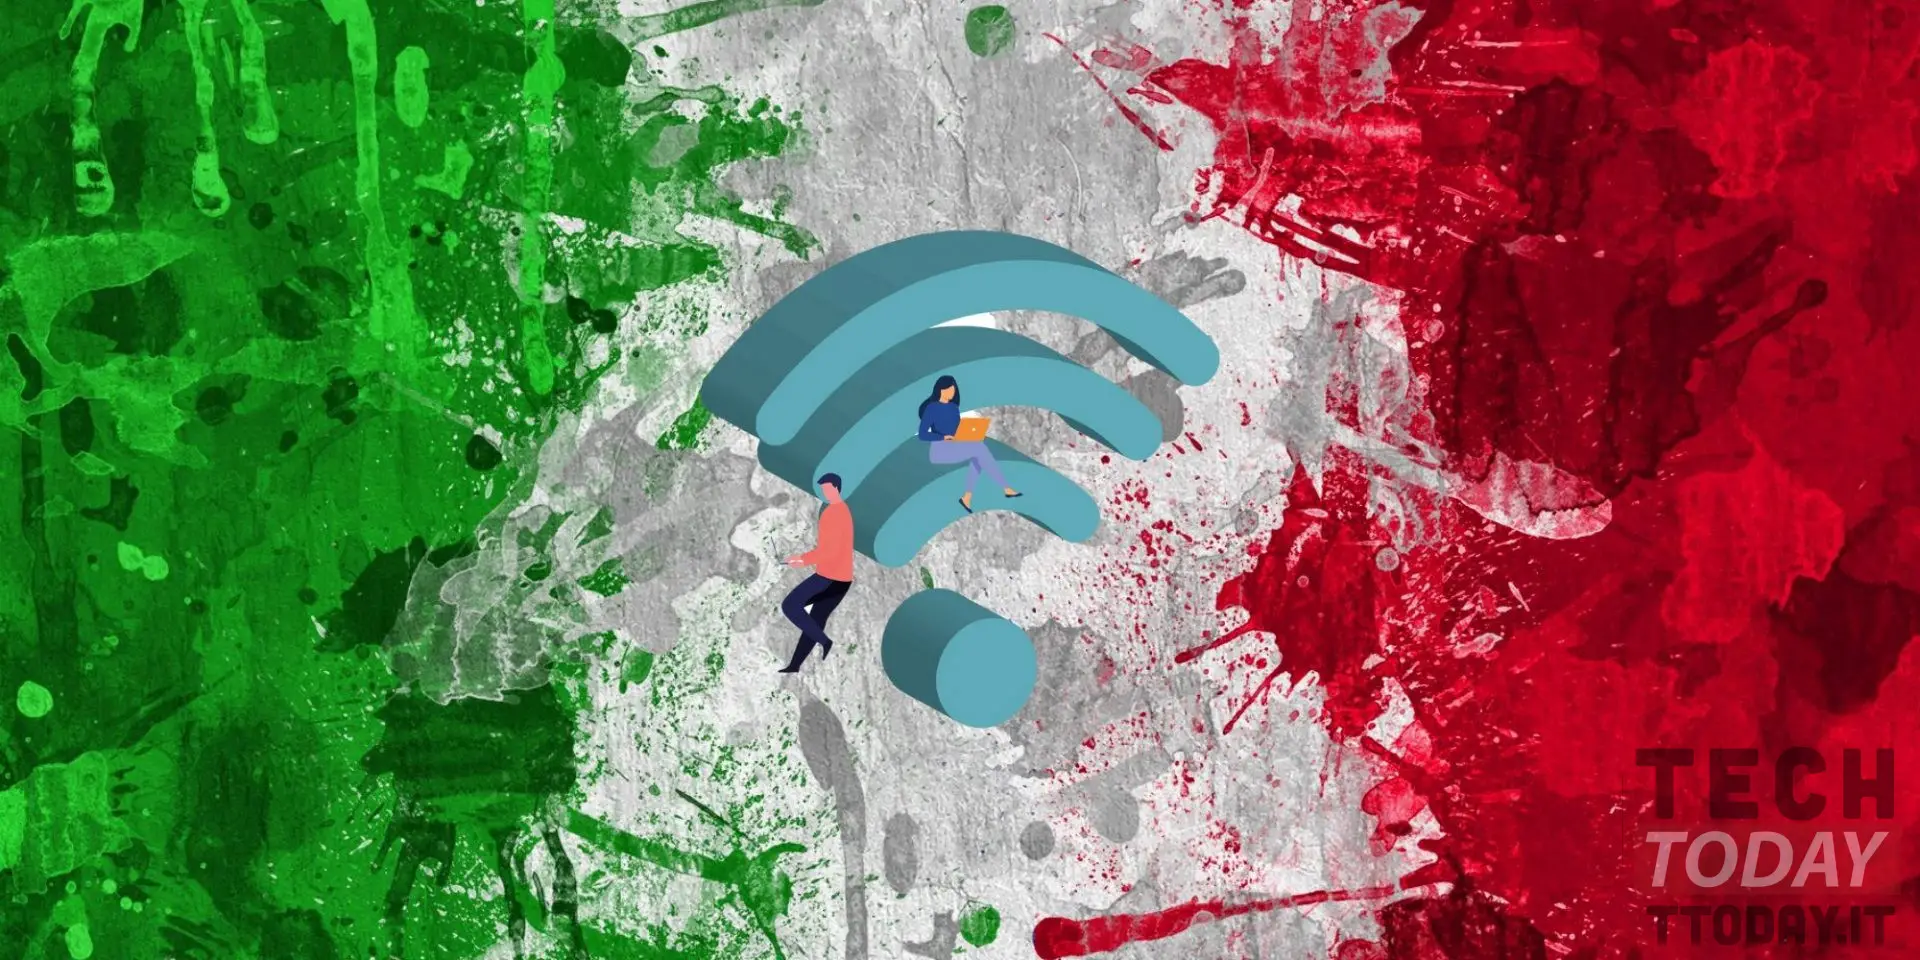 wi-fi italia_ plan de internet ilimitado